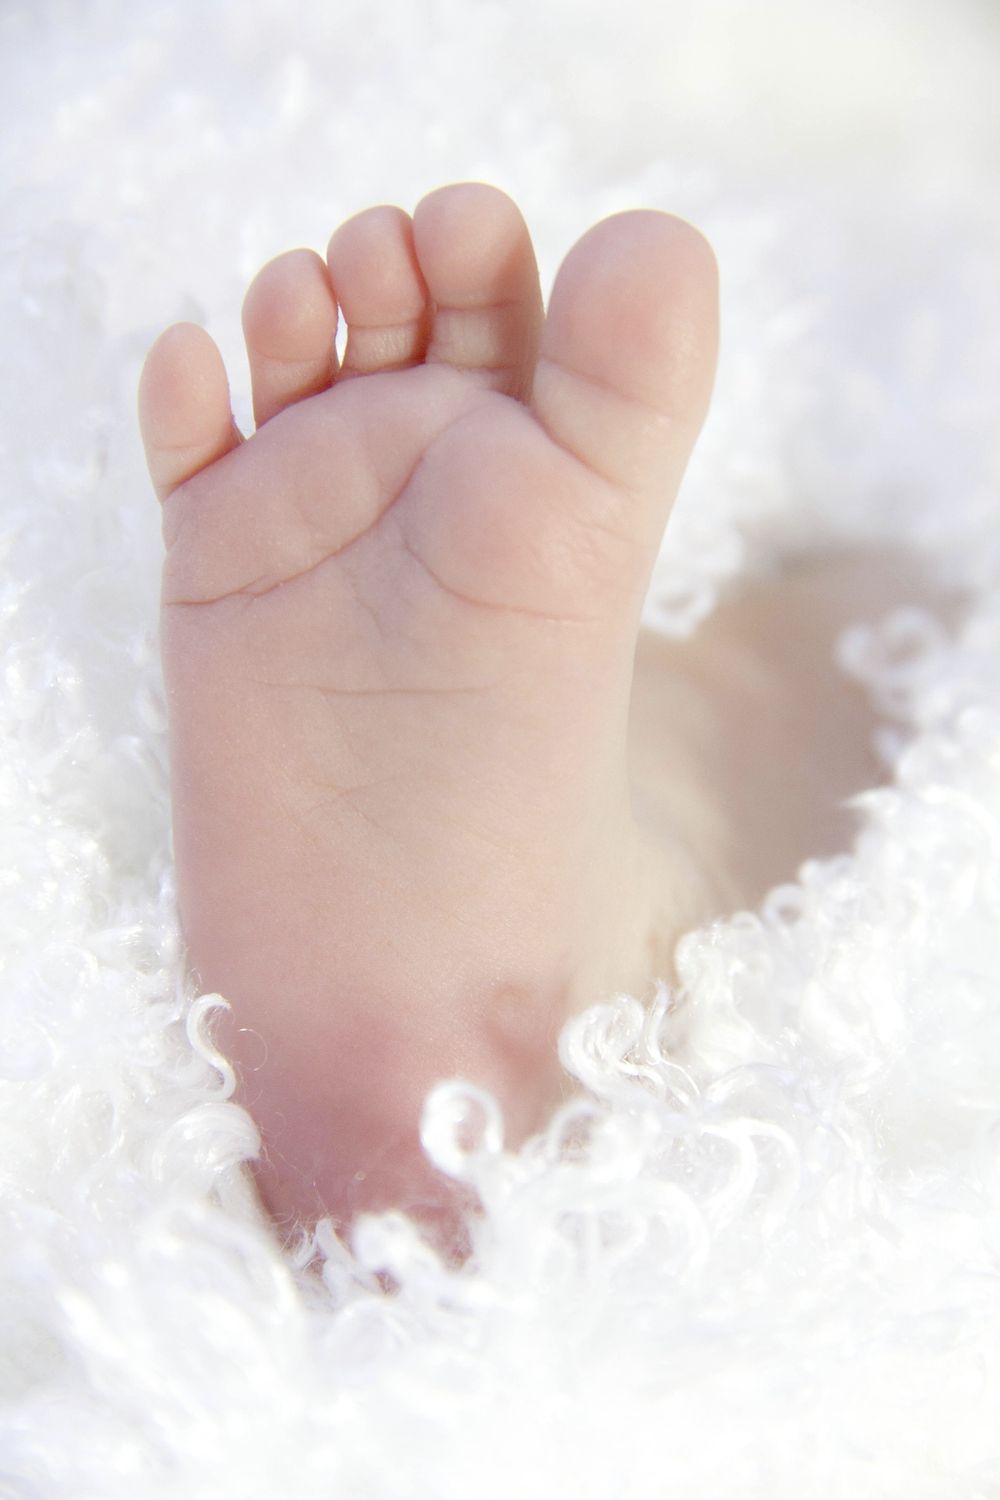 Tiny baby foot